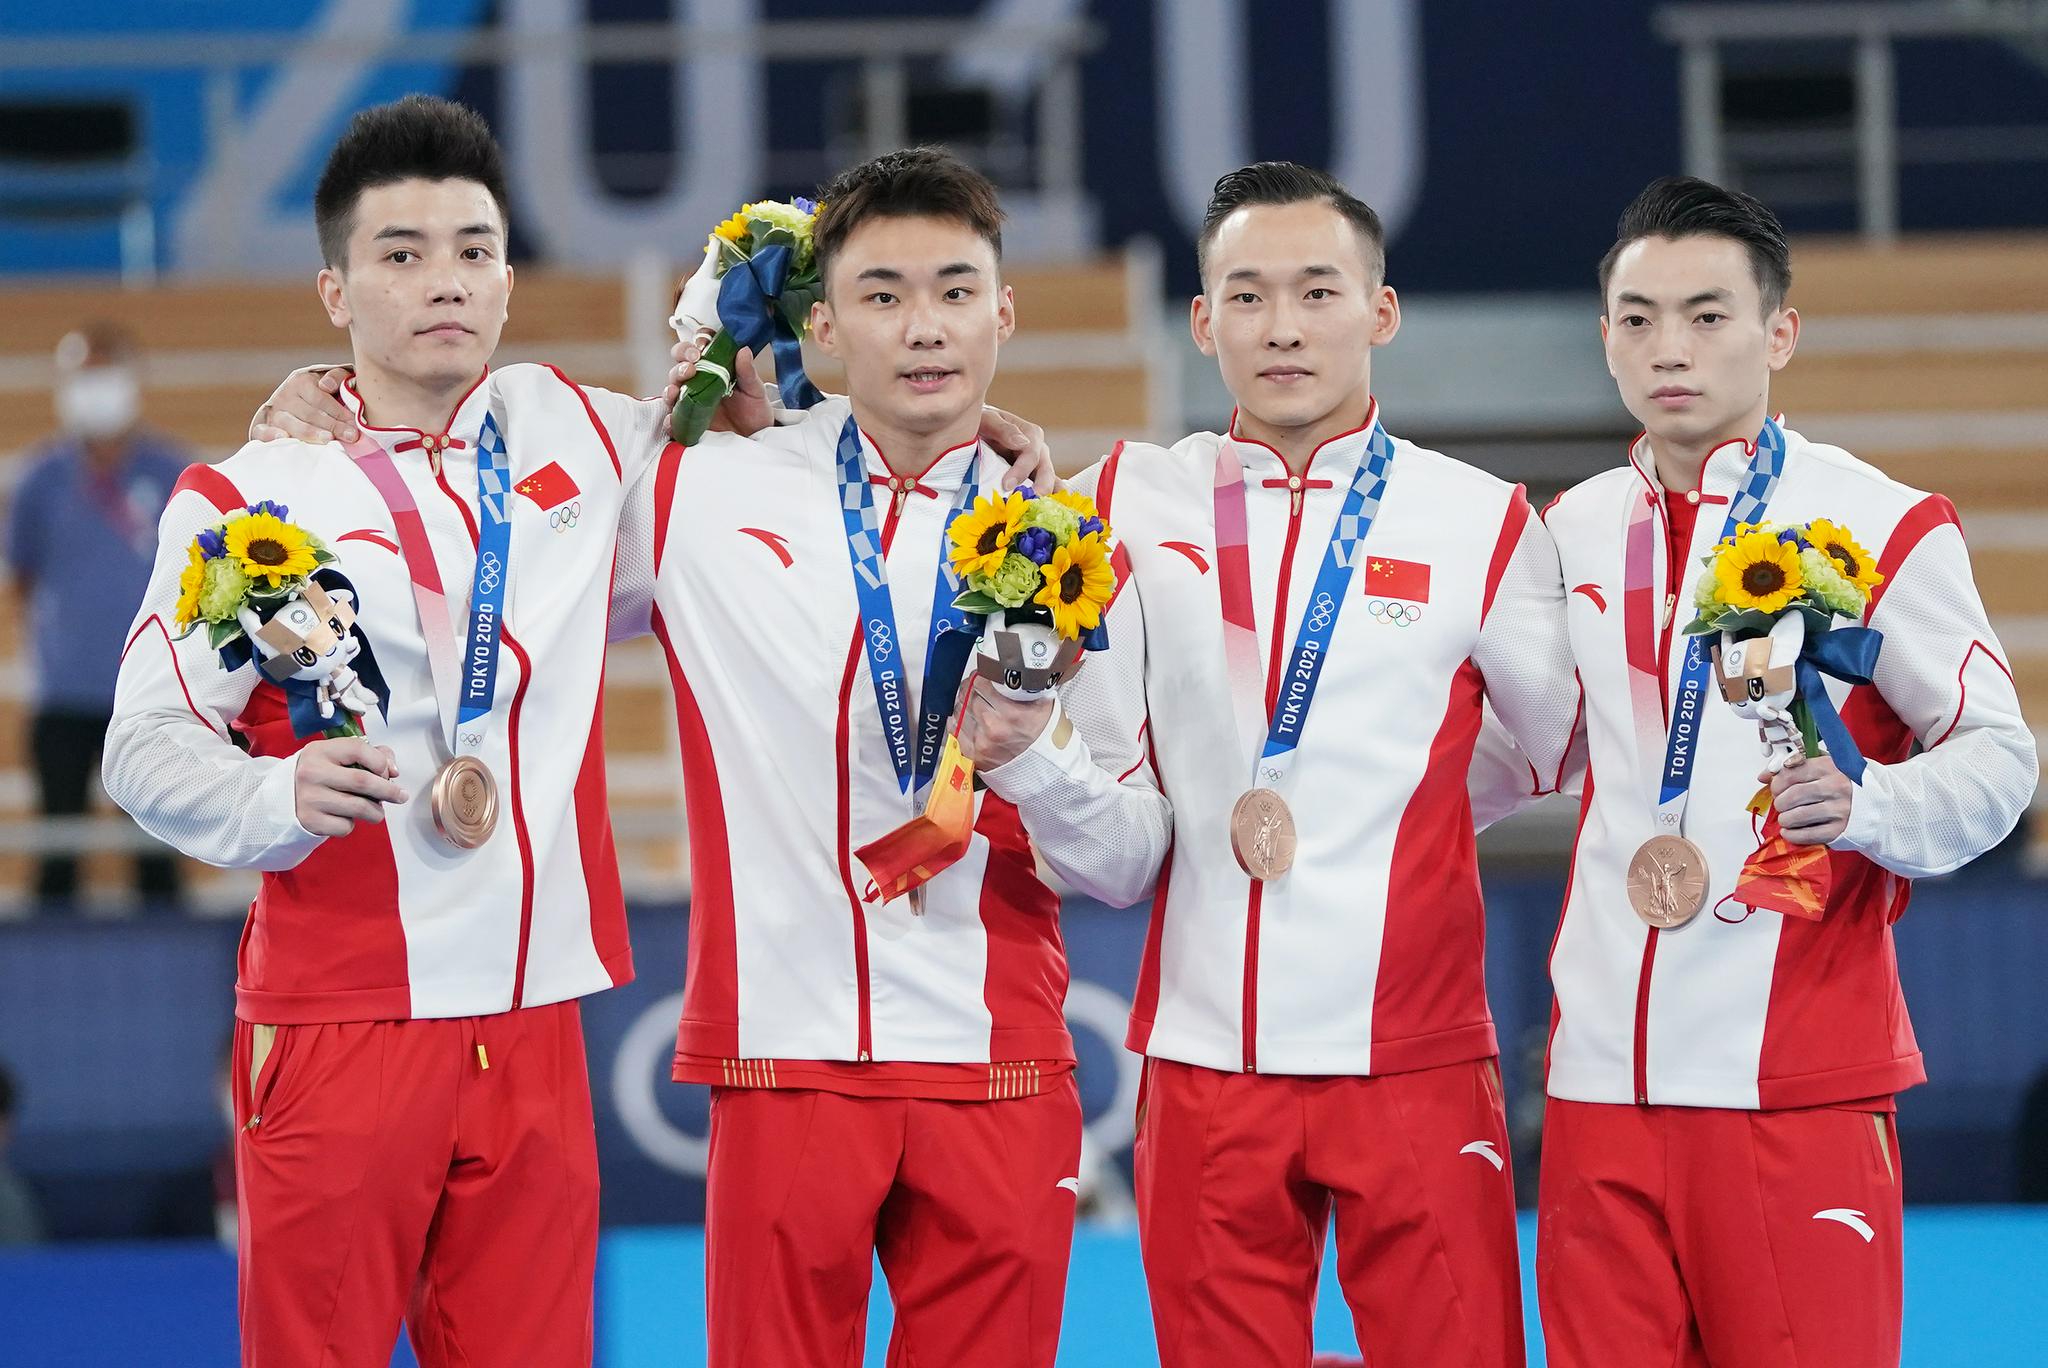 祝贺！中国队位列奖牌榜第三！_中国奖牌榜超越美国升至第三_收获_来源